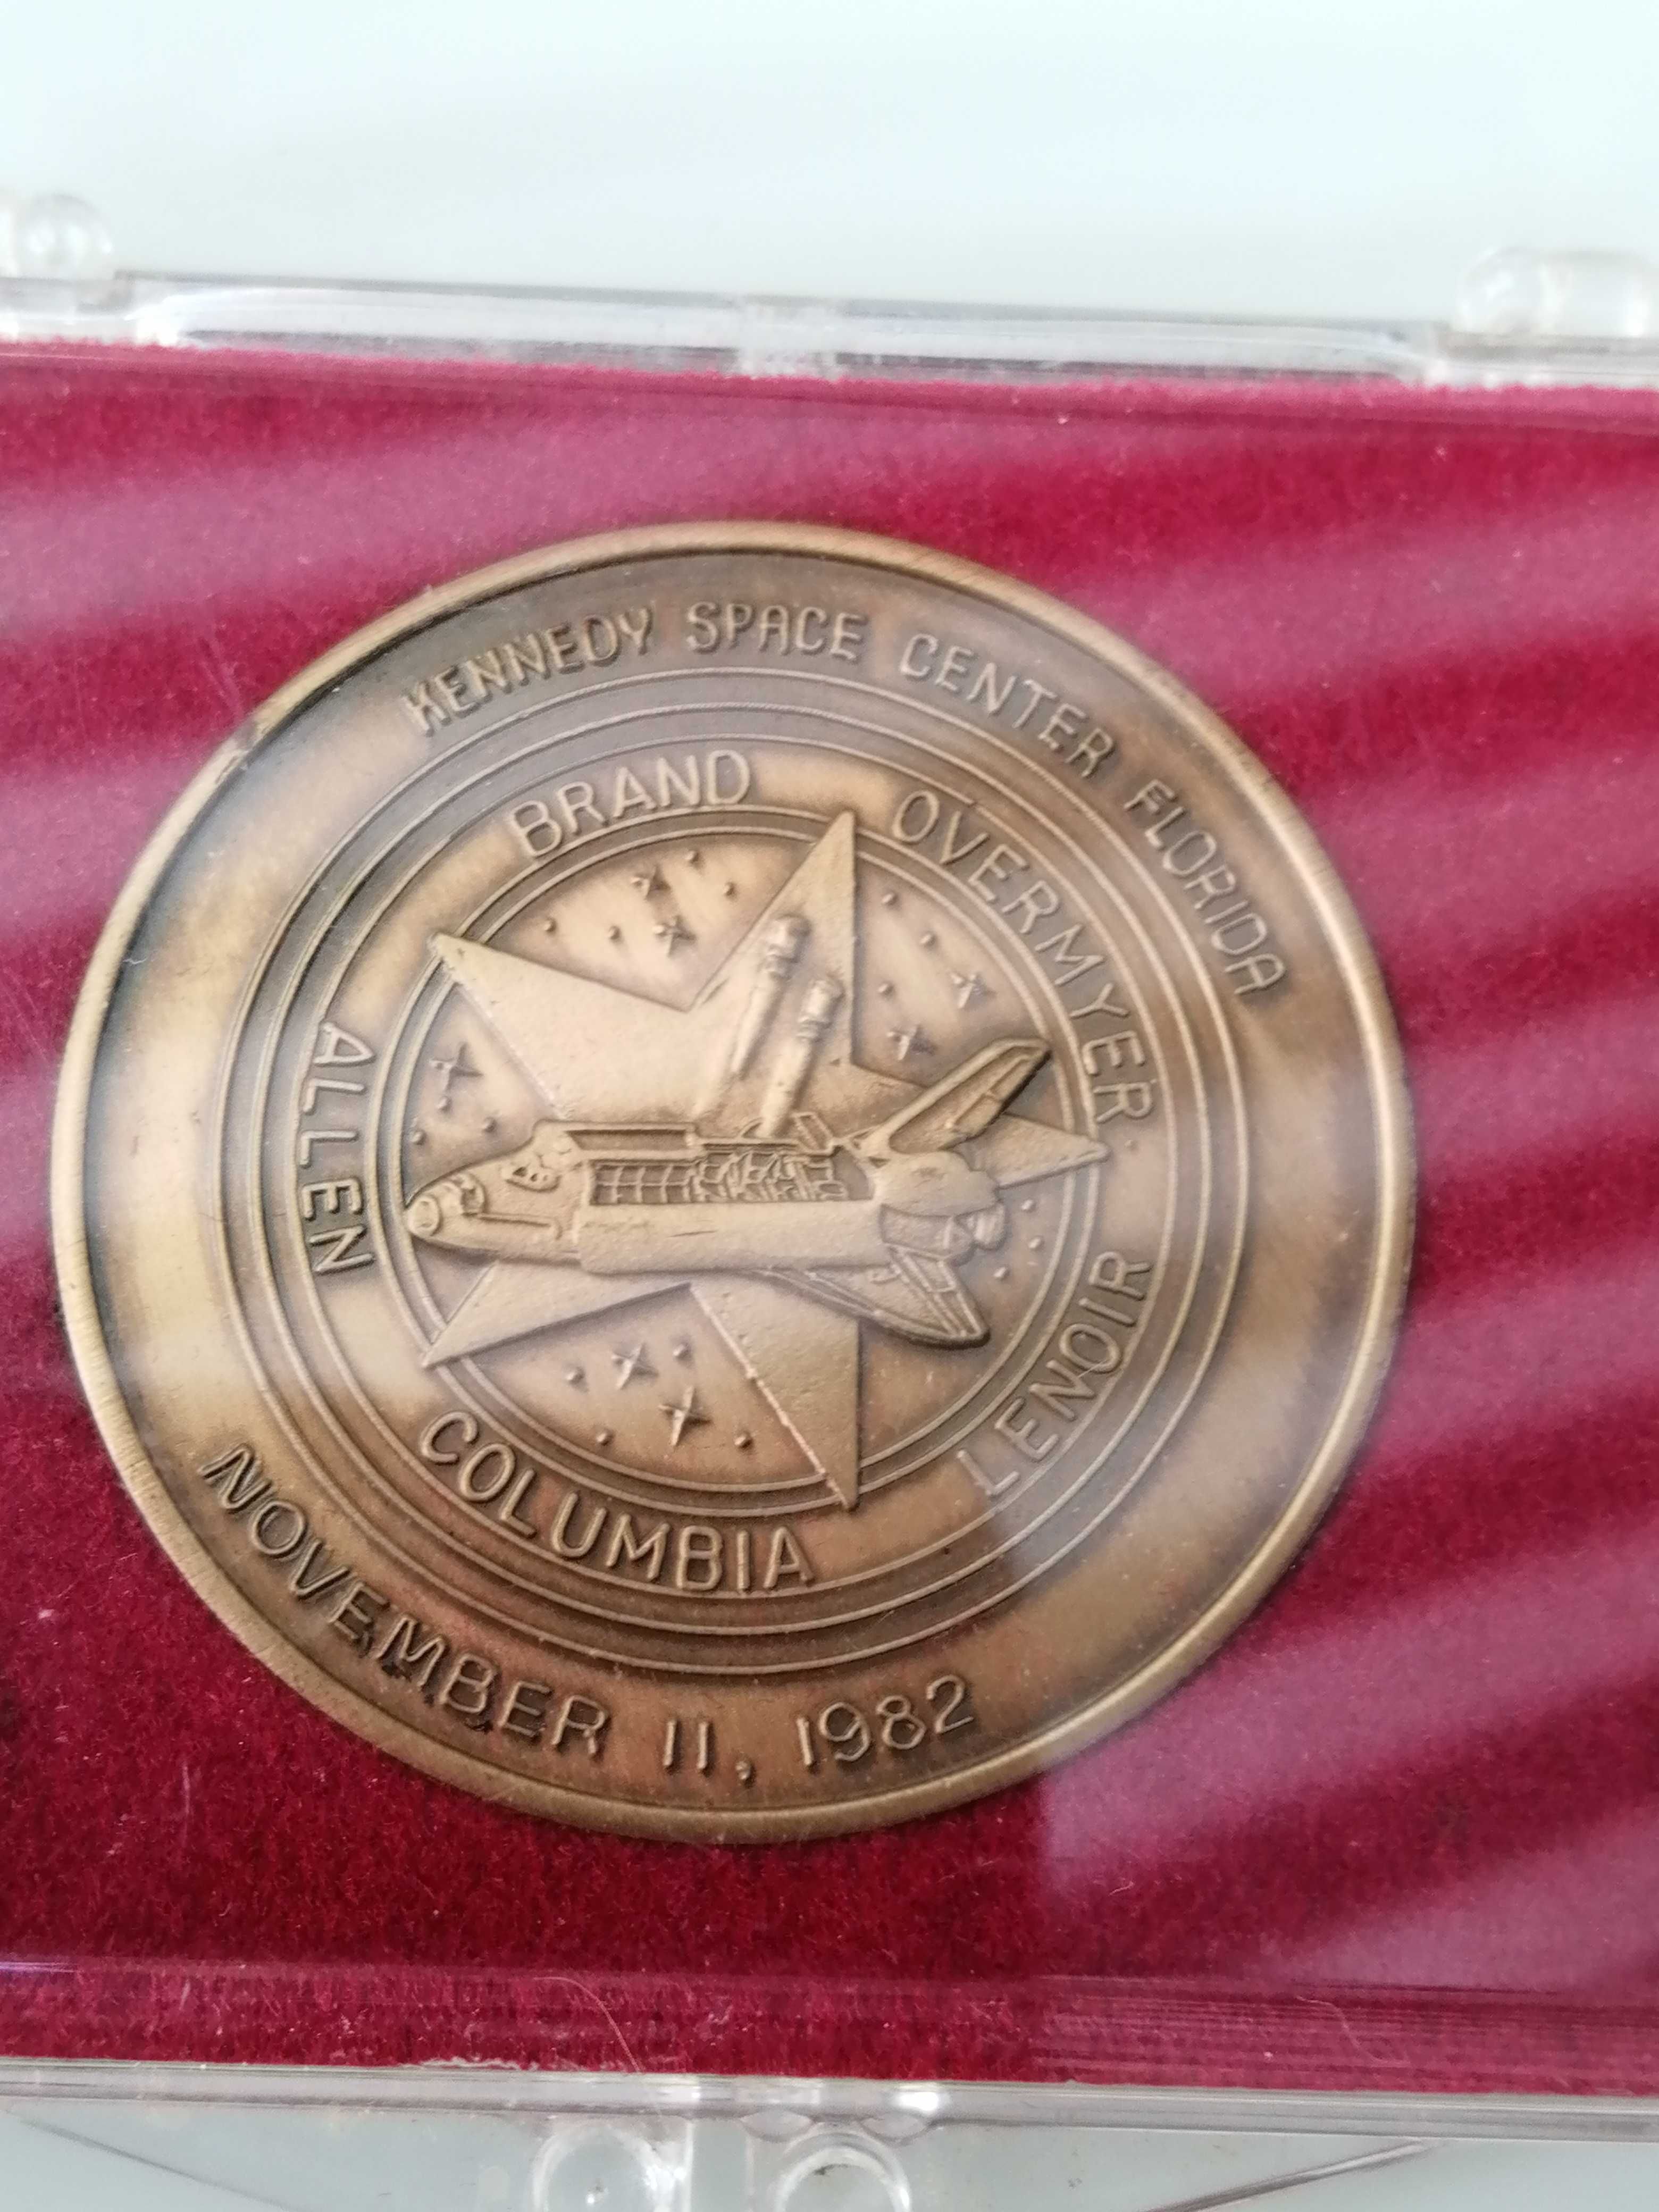 Medalha comemorativa da ida ao espaço.